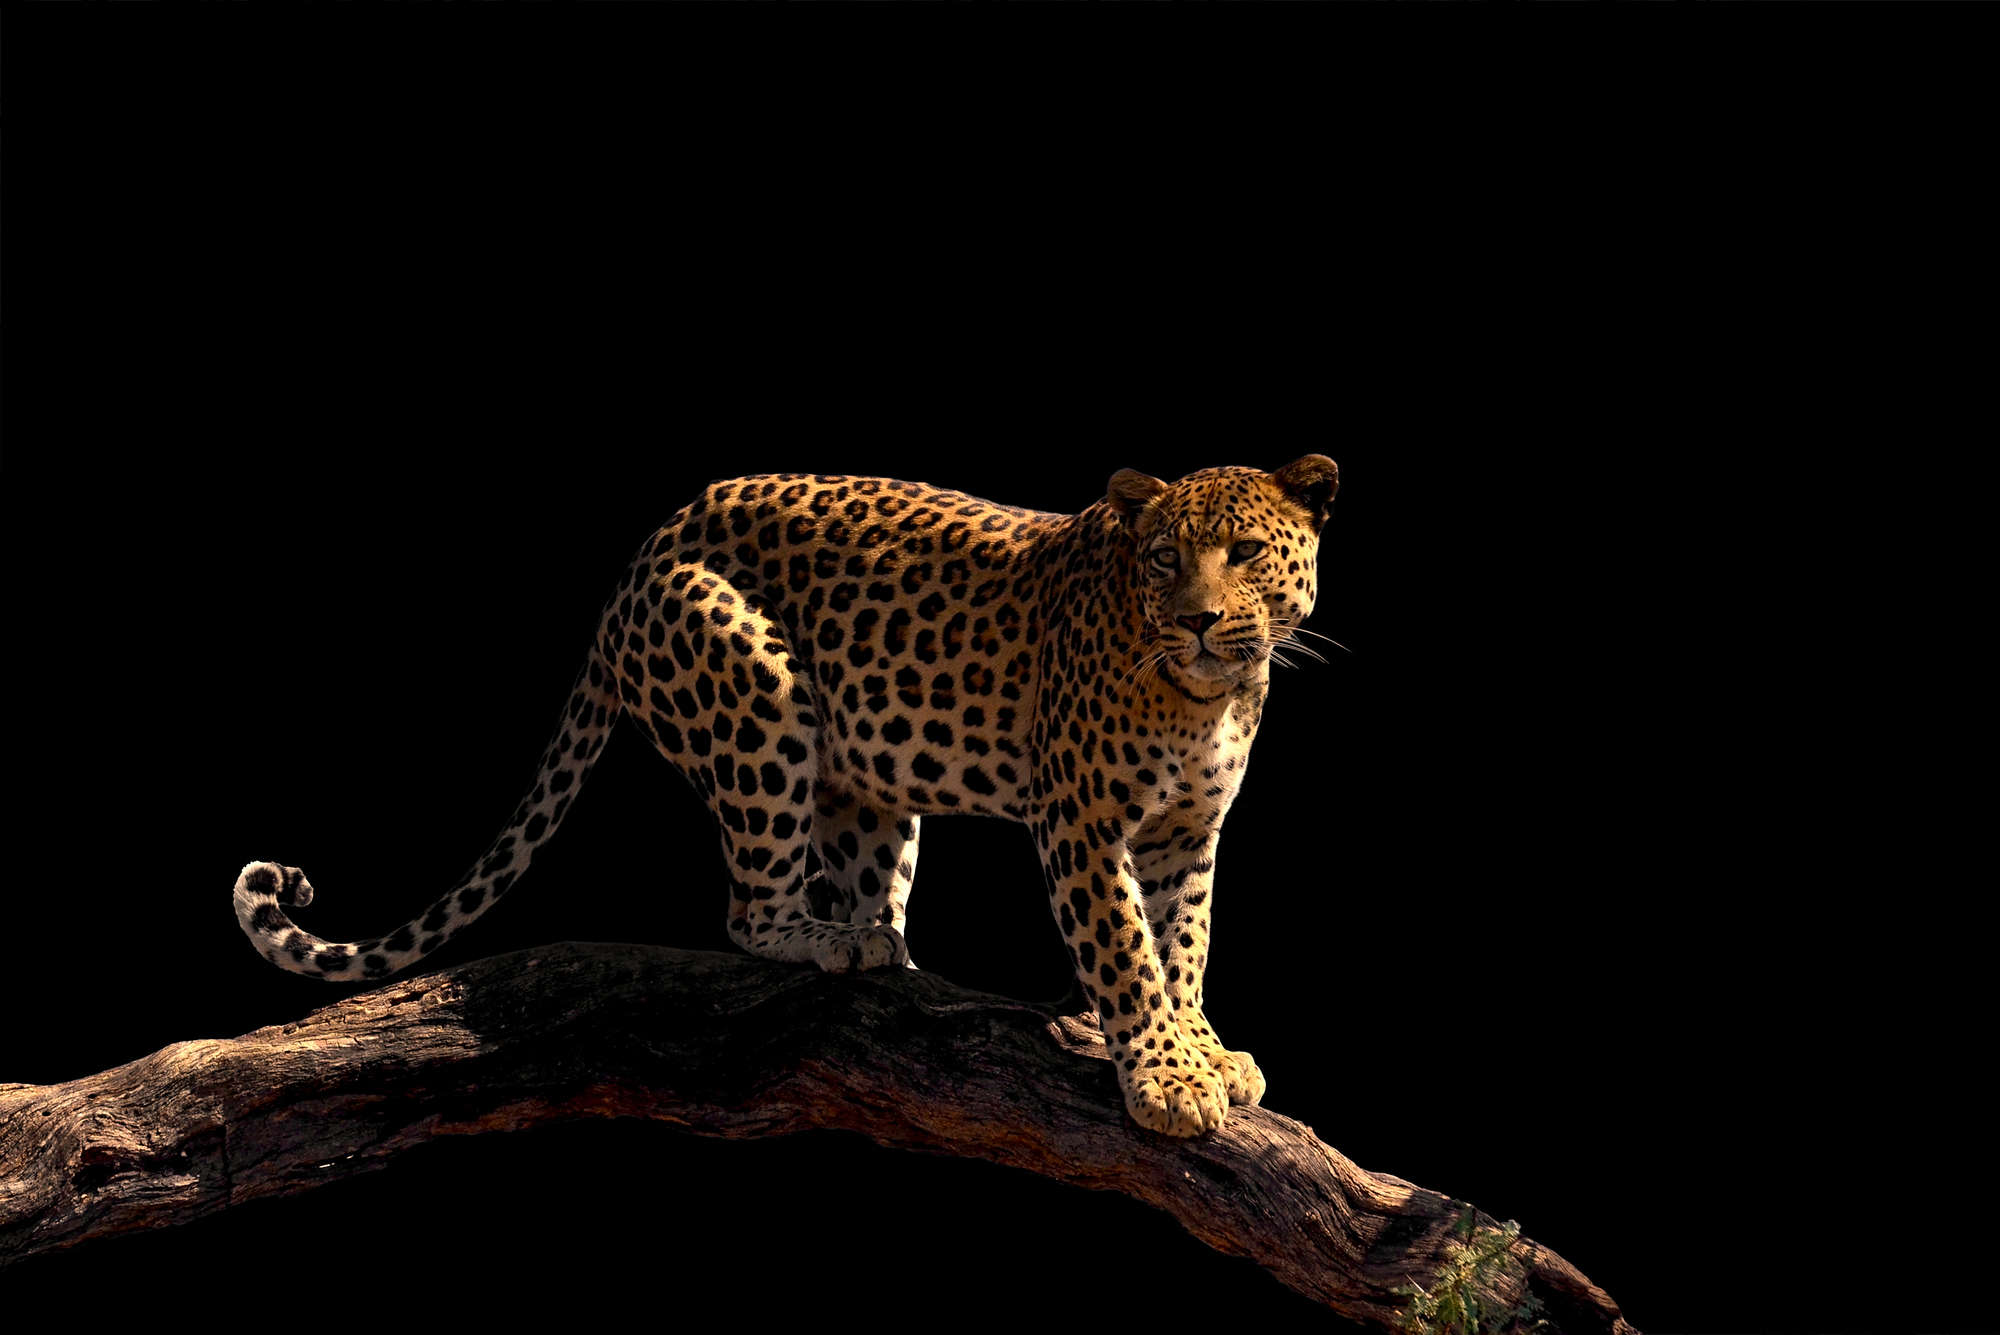             Mural de leopardo de pie sobre una rama en vinilo texturizado
        